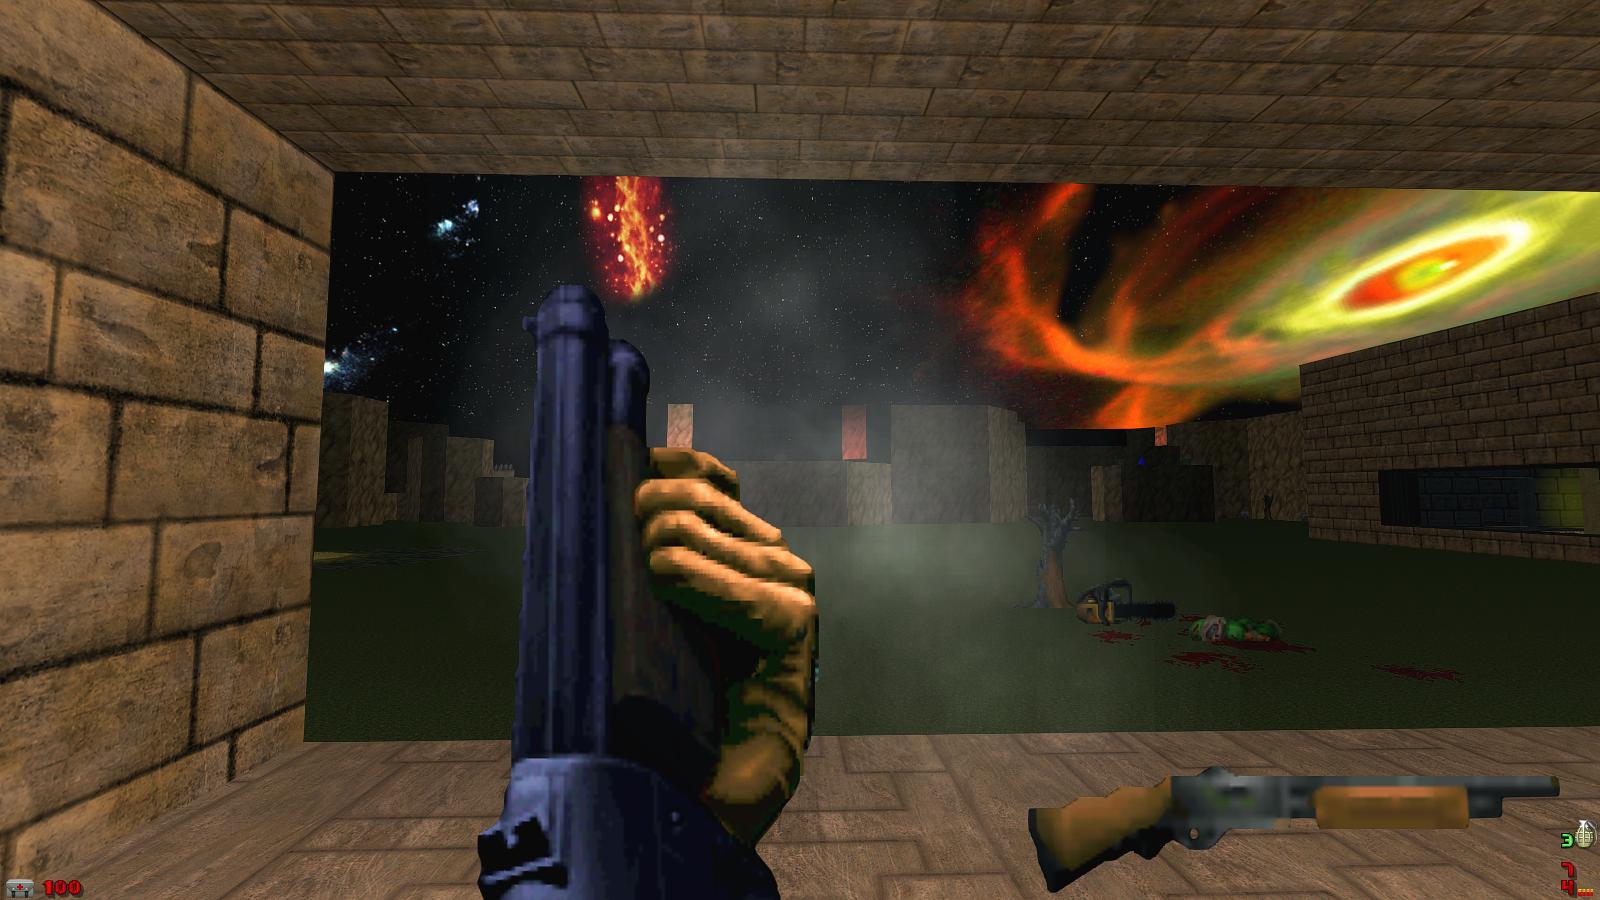 brutal doom redemption mod for doom, doom 64 ssg and shotgun return, image,...